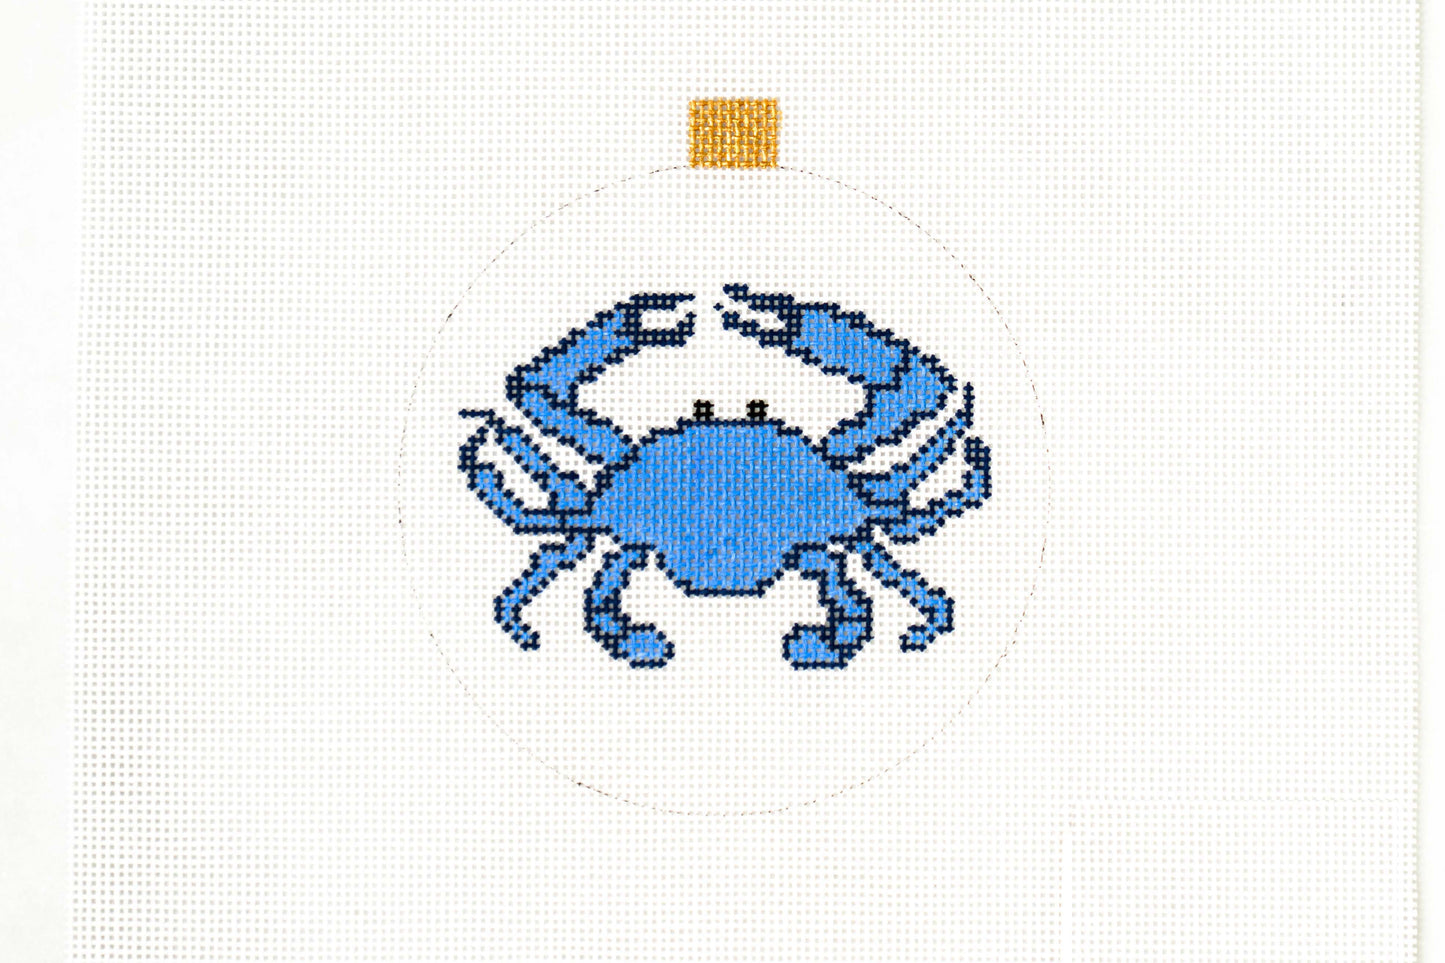 Blue Crab ornament/coaster